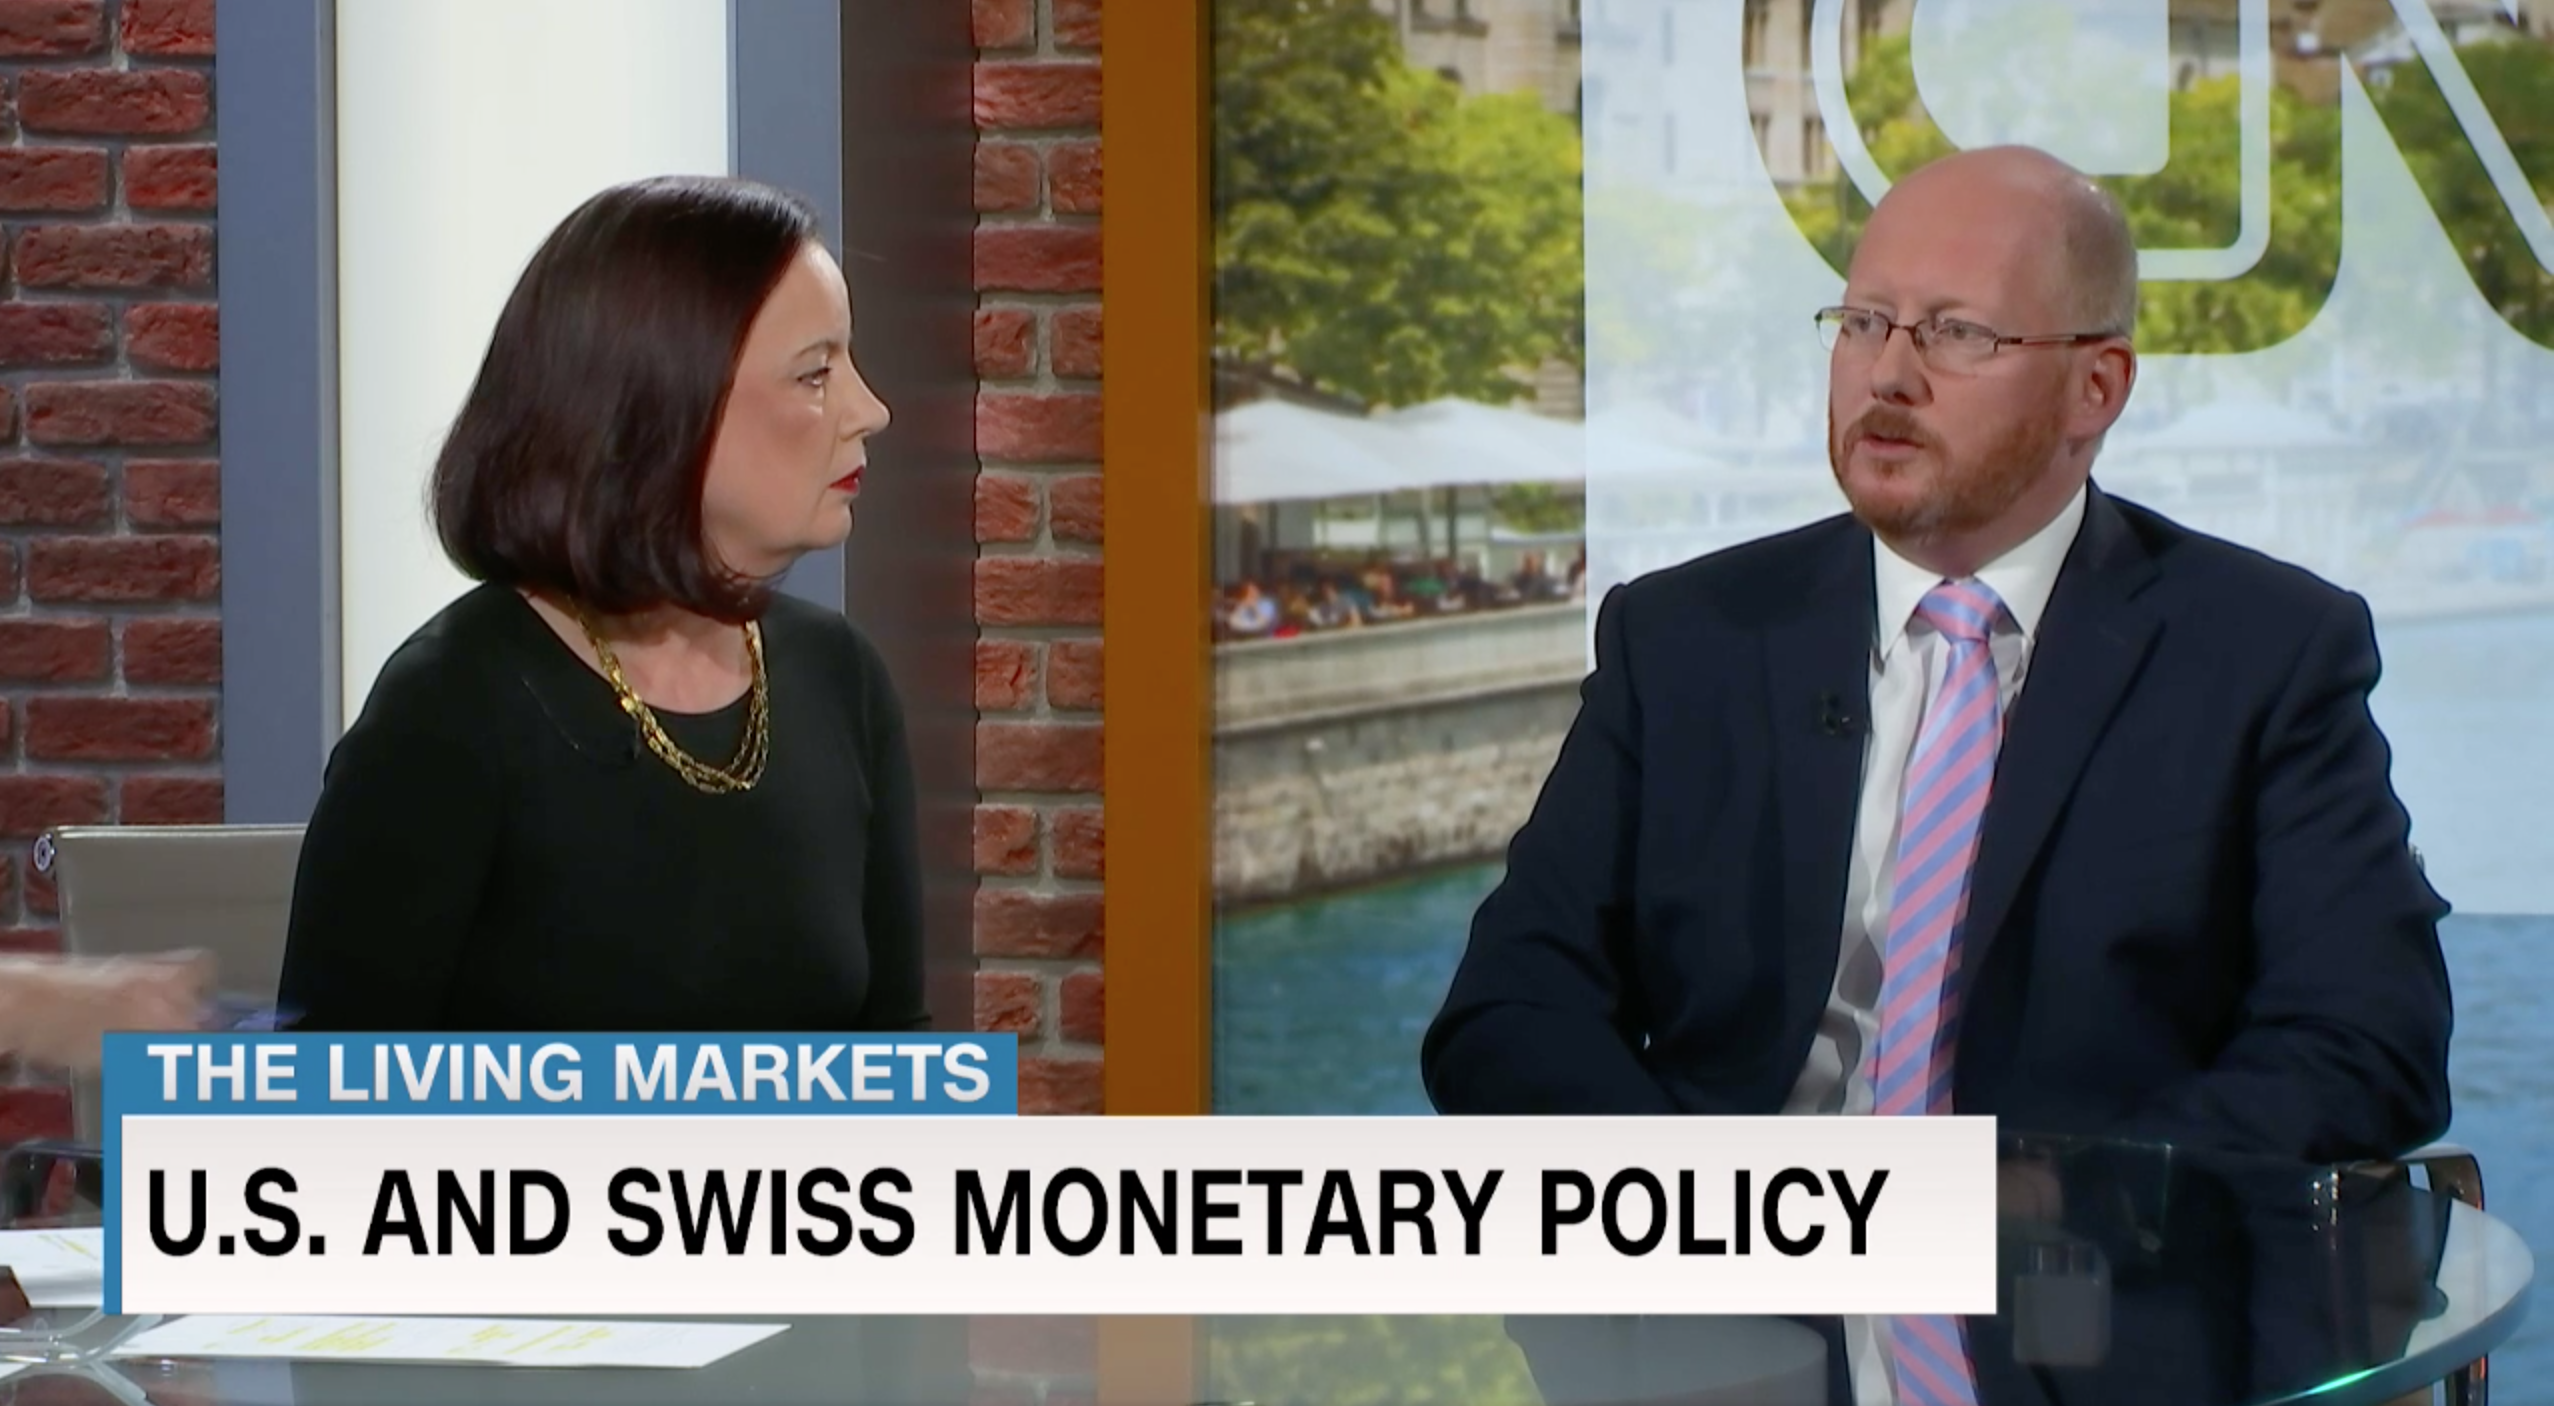 FERN WEALTH HEAD OF INVESTMENT MANAGEMENT INTERVIEWED BY CNN MONEY SWITZERLAND